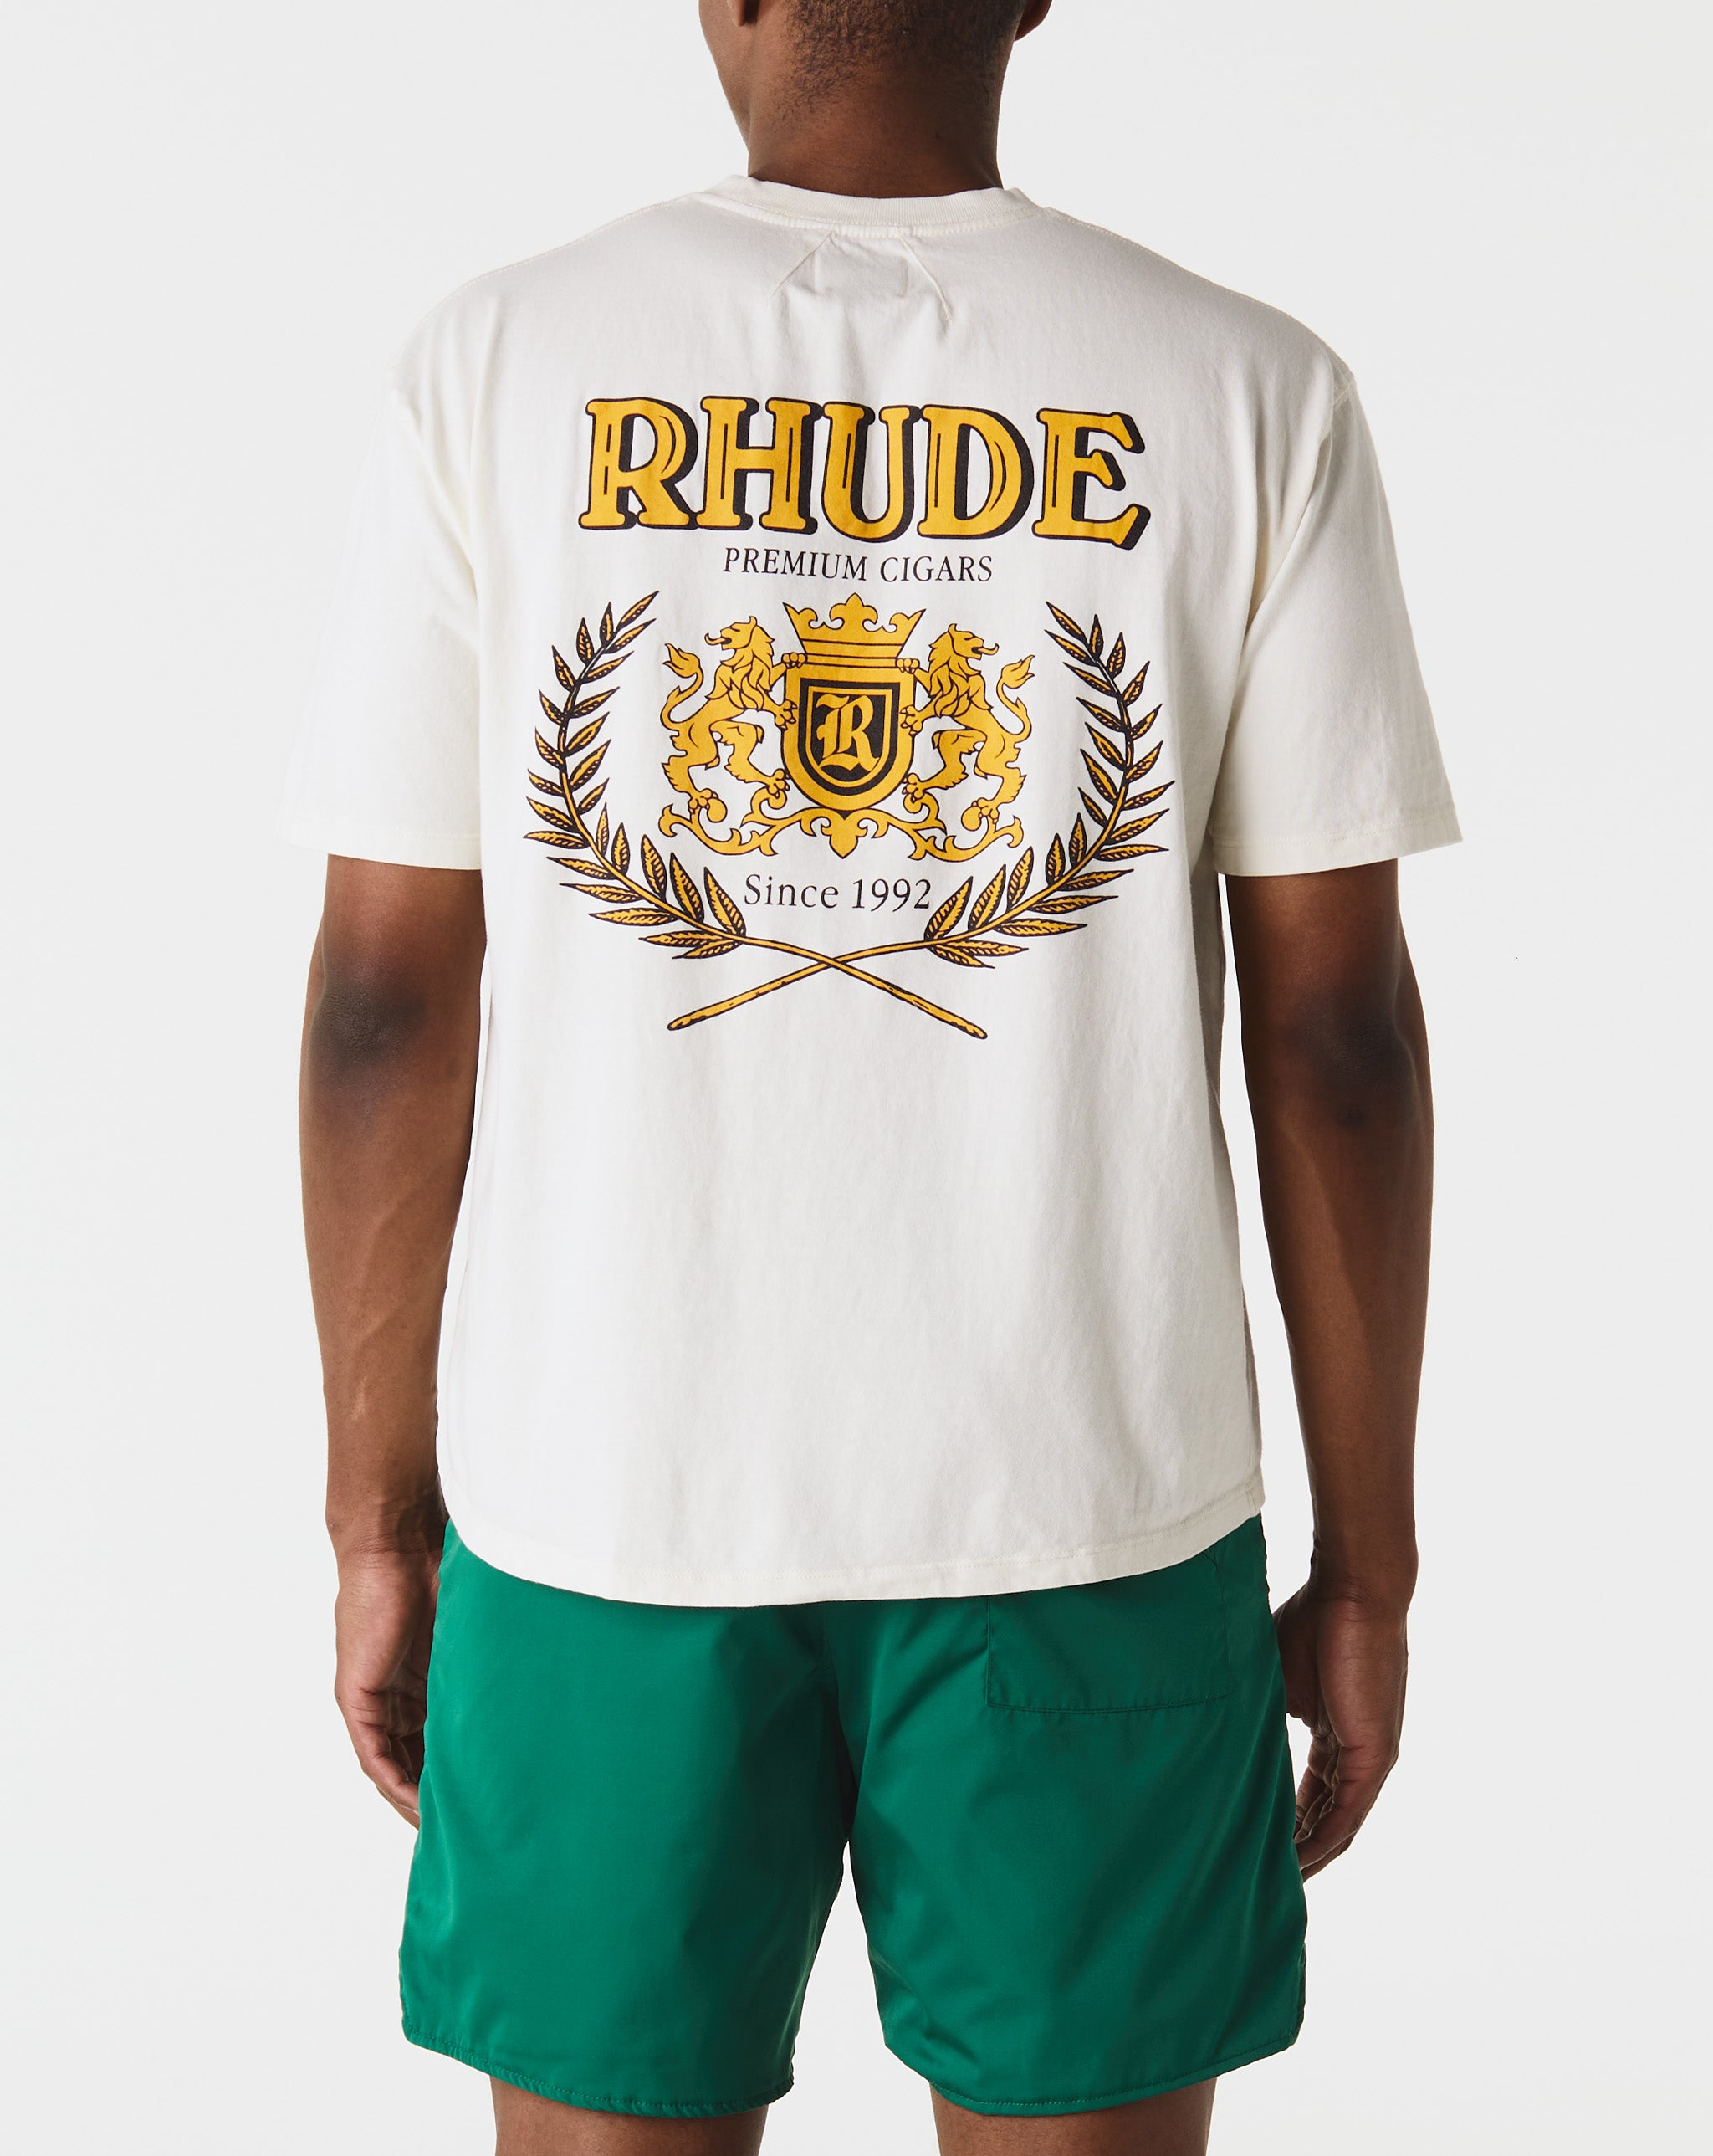 Rhude Shirts & Polos  - Cheap Urlfreeze Jordan outlet